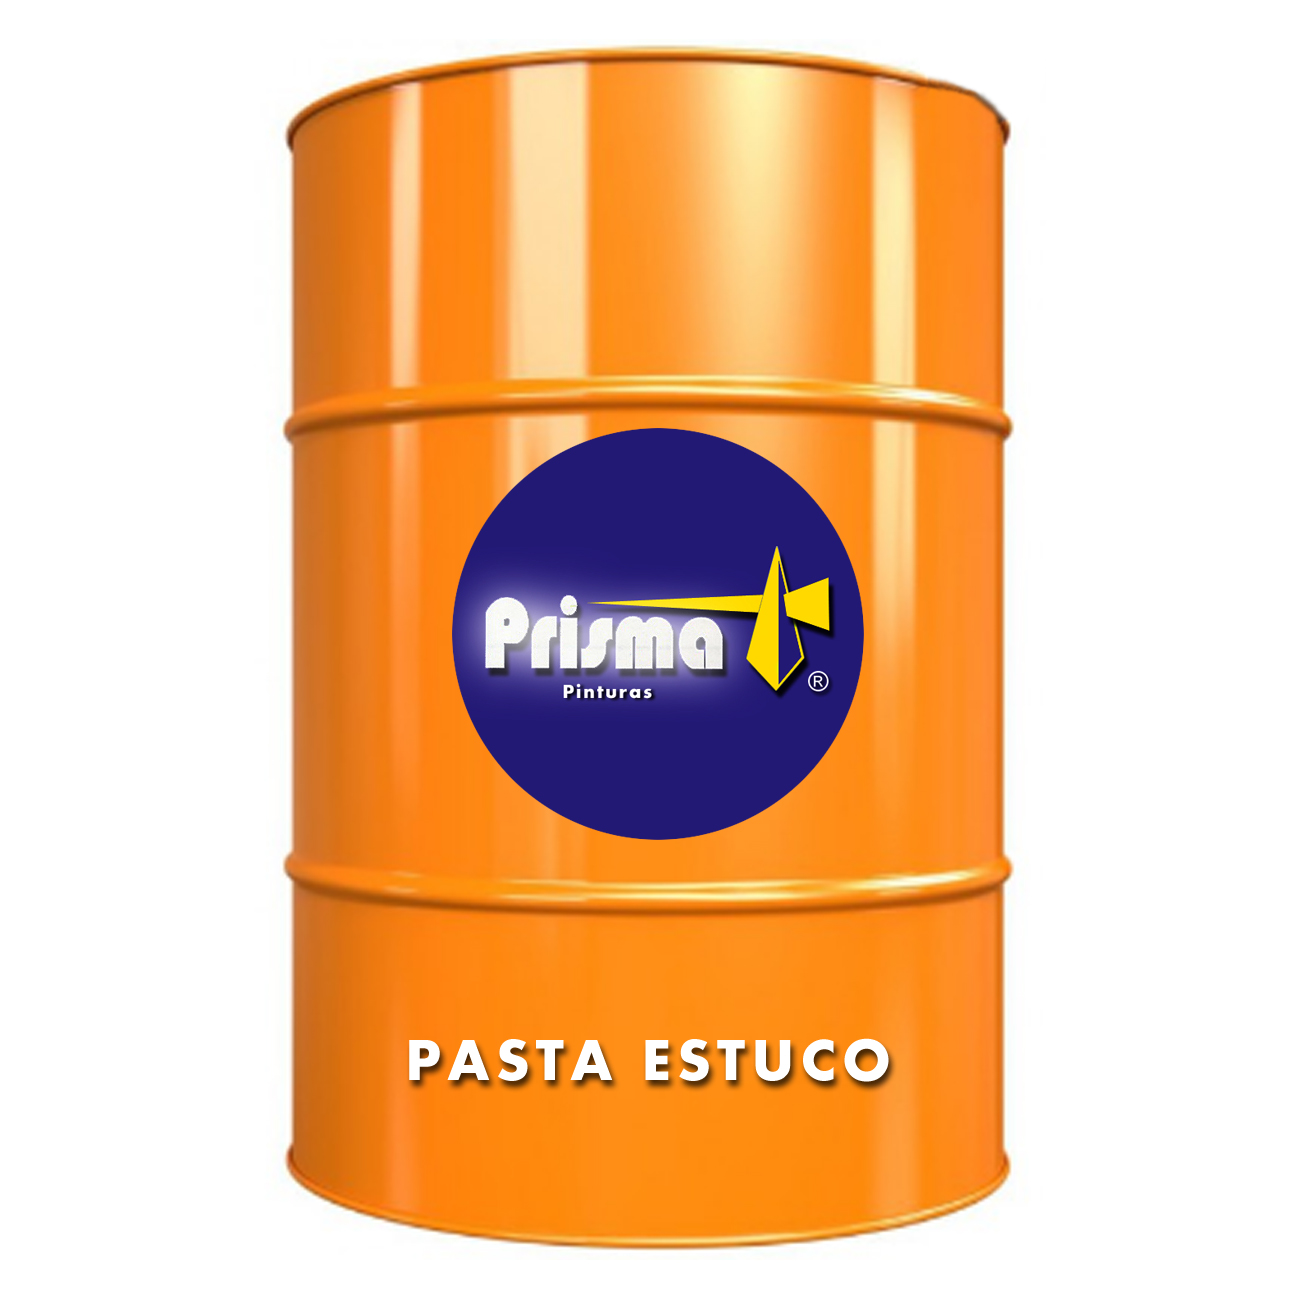 Pasta estuco natural (Tambor 250 Kg.) – Prisma